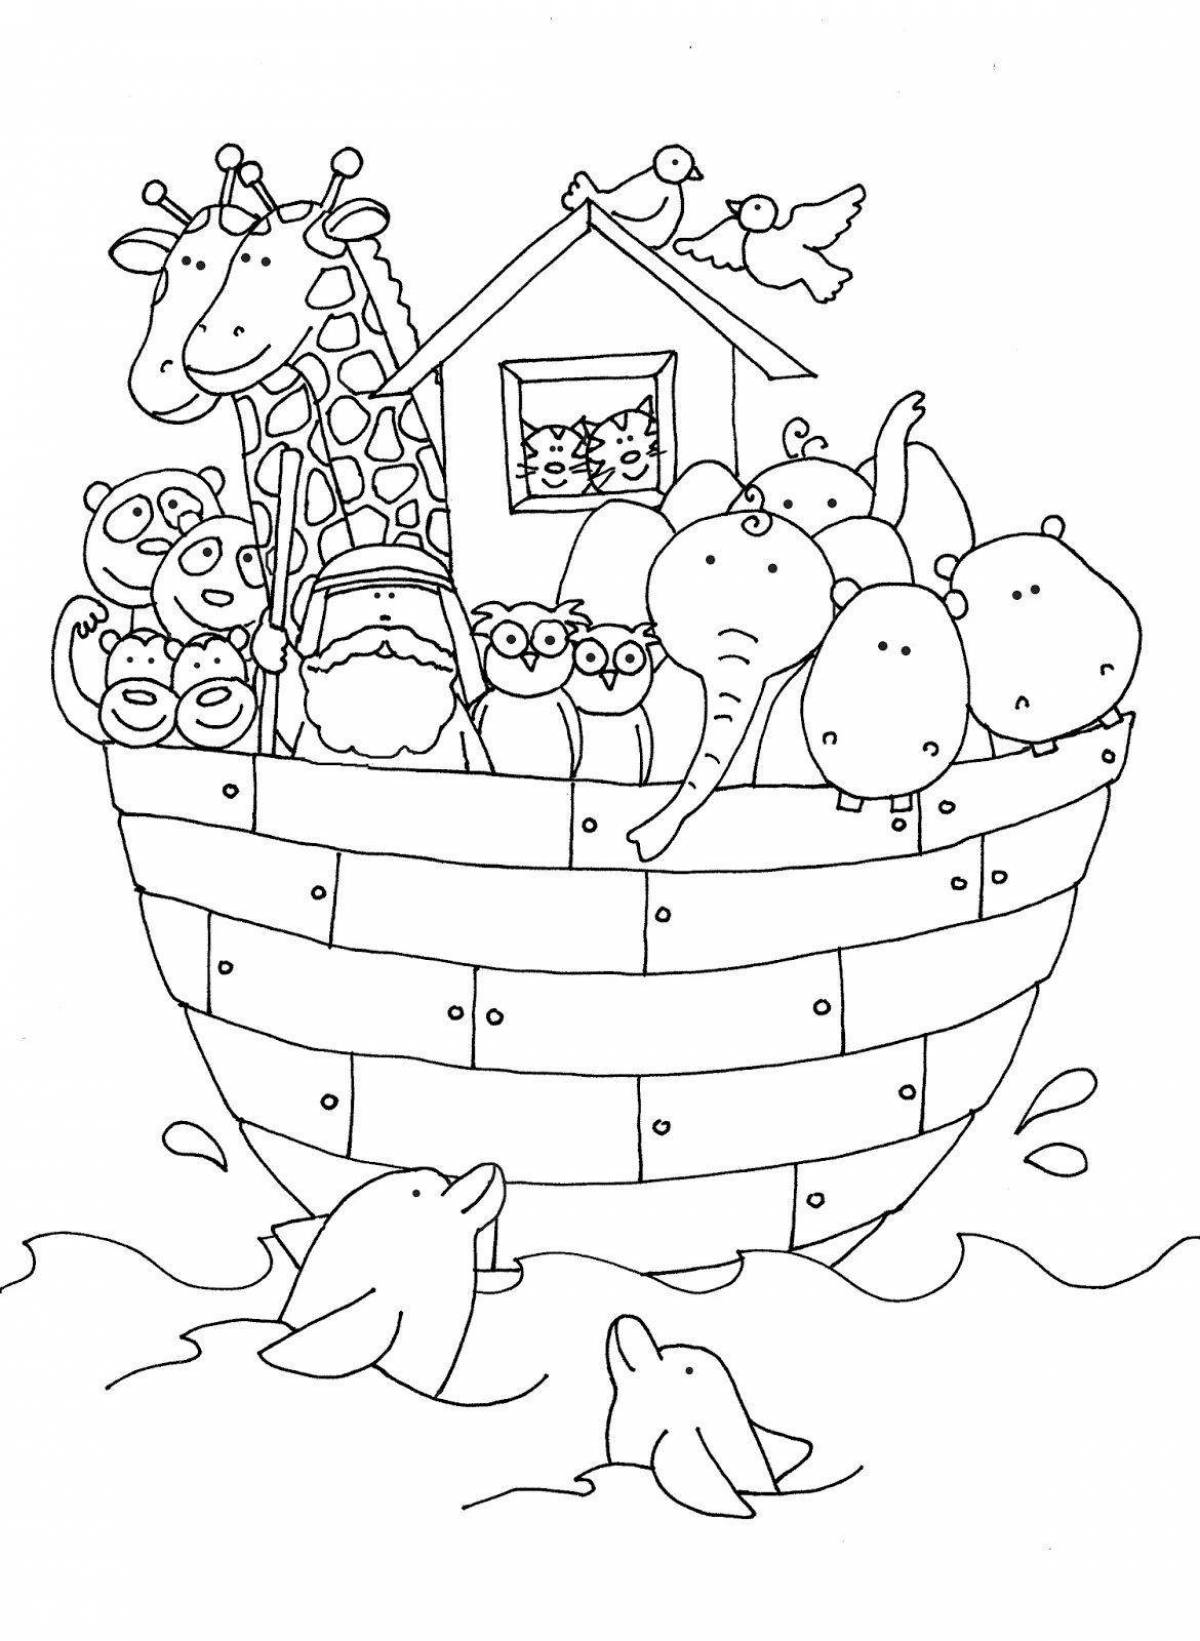 Noah's Ark for kids #8